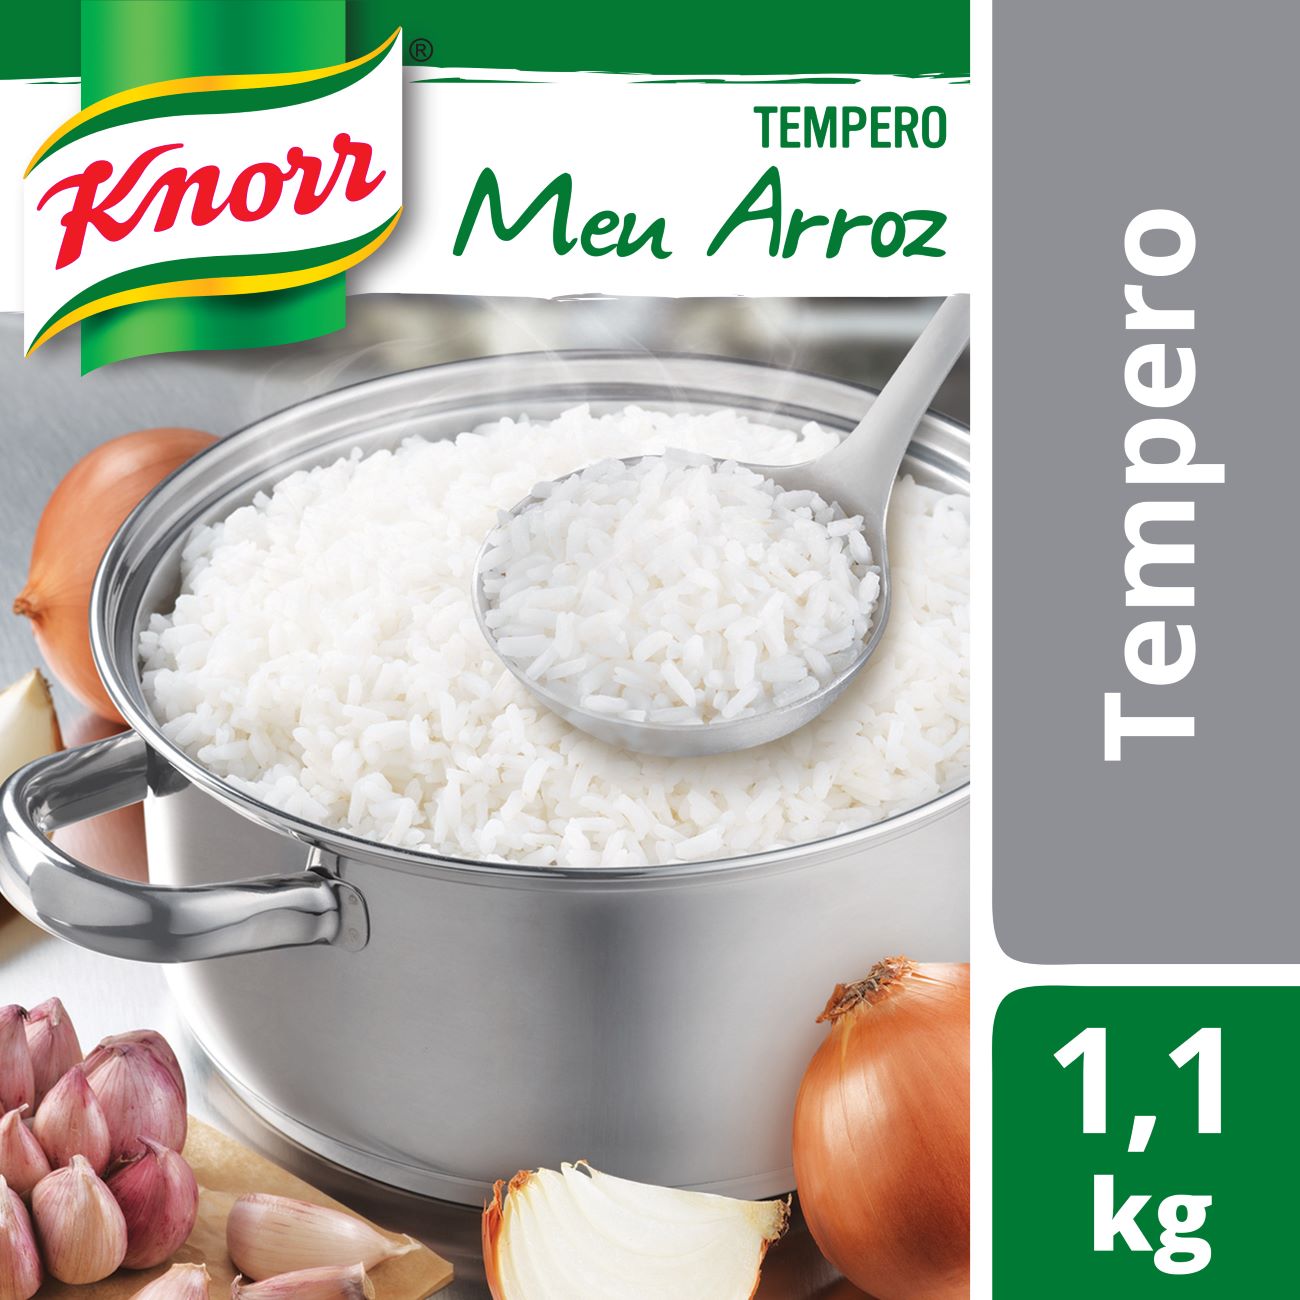 Tempero em P� Knorr Meu Arroz Bag 1,1kg